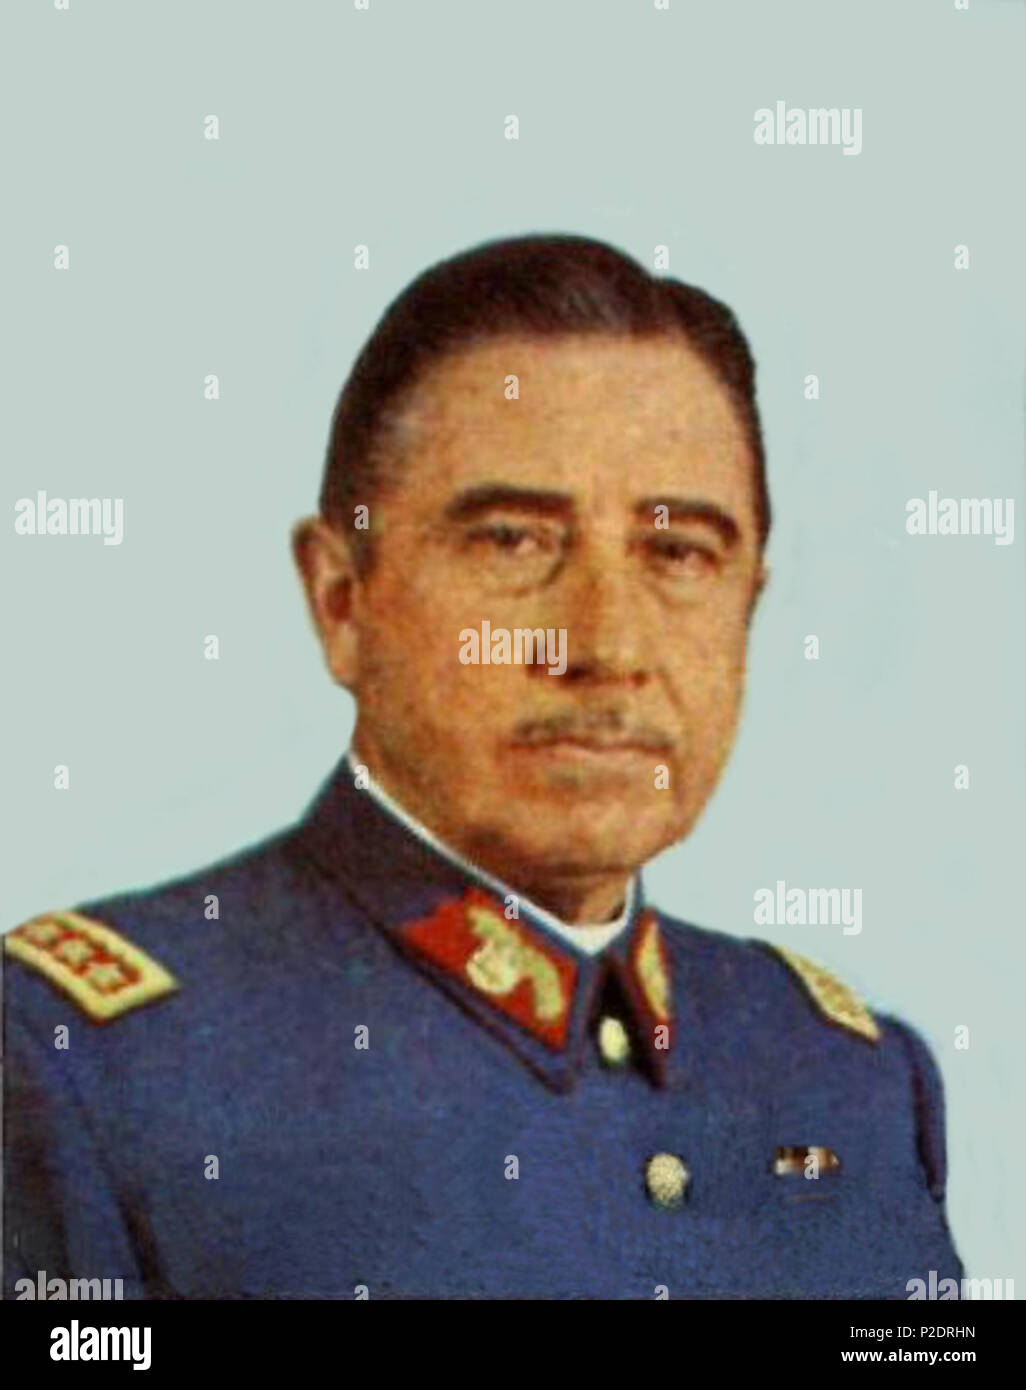 . Le général Augusto Pinochet Ugarte en 1974. 19 novembre 2009, 03:57 (UTC). Pinochet-estampilla.jpg : NCO Leopoldo Víctor Vargas (Fuerza Aérea de Chile) *travail dérivé : Rec79 (talk) 2 A. Pinochet Stamp Banque D'Images